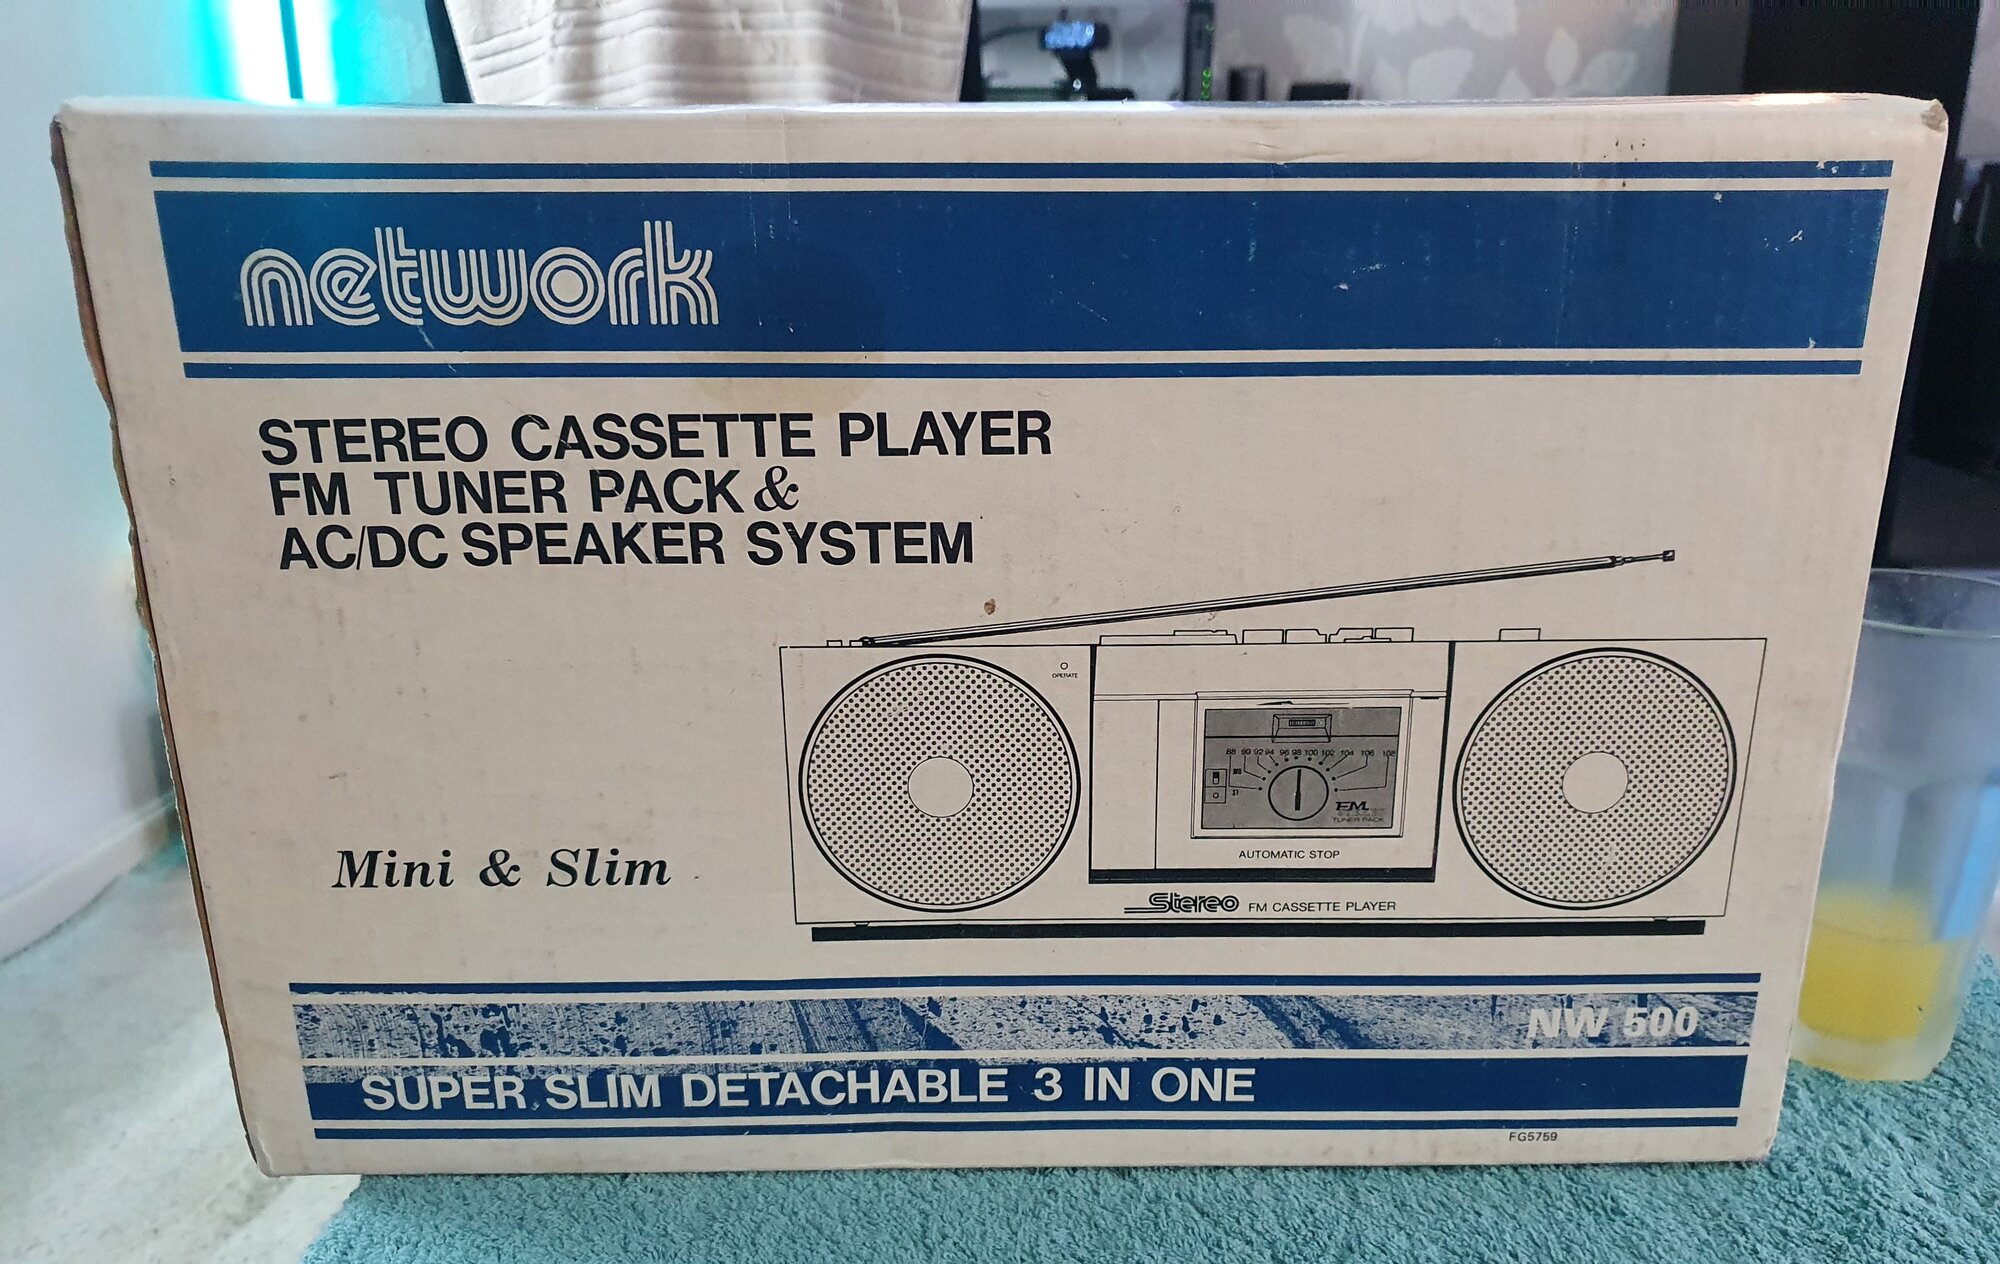 Network AS-500 Mini Radio Cassette Player - December 2021 (1).jpg